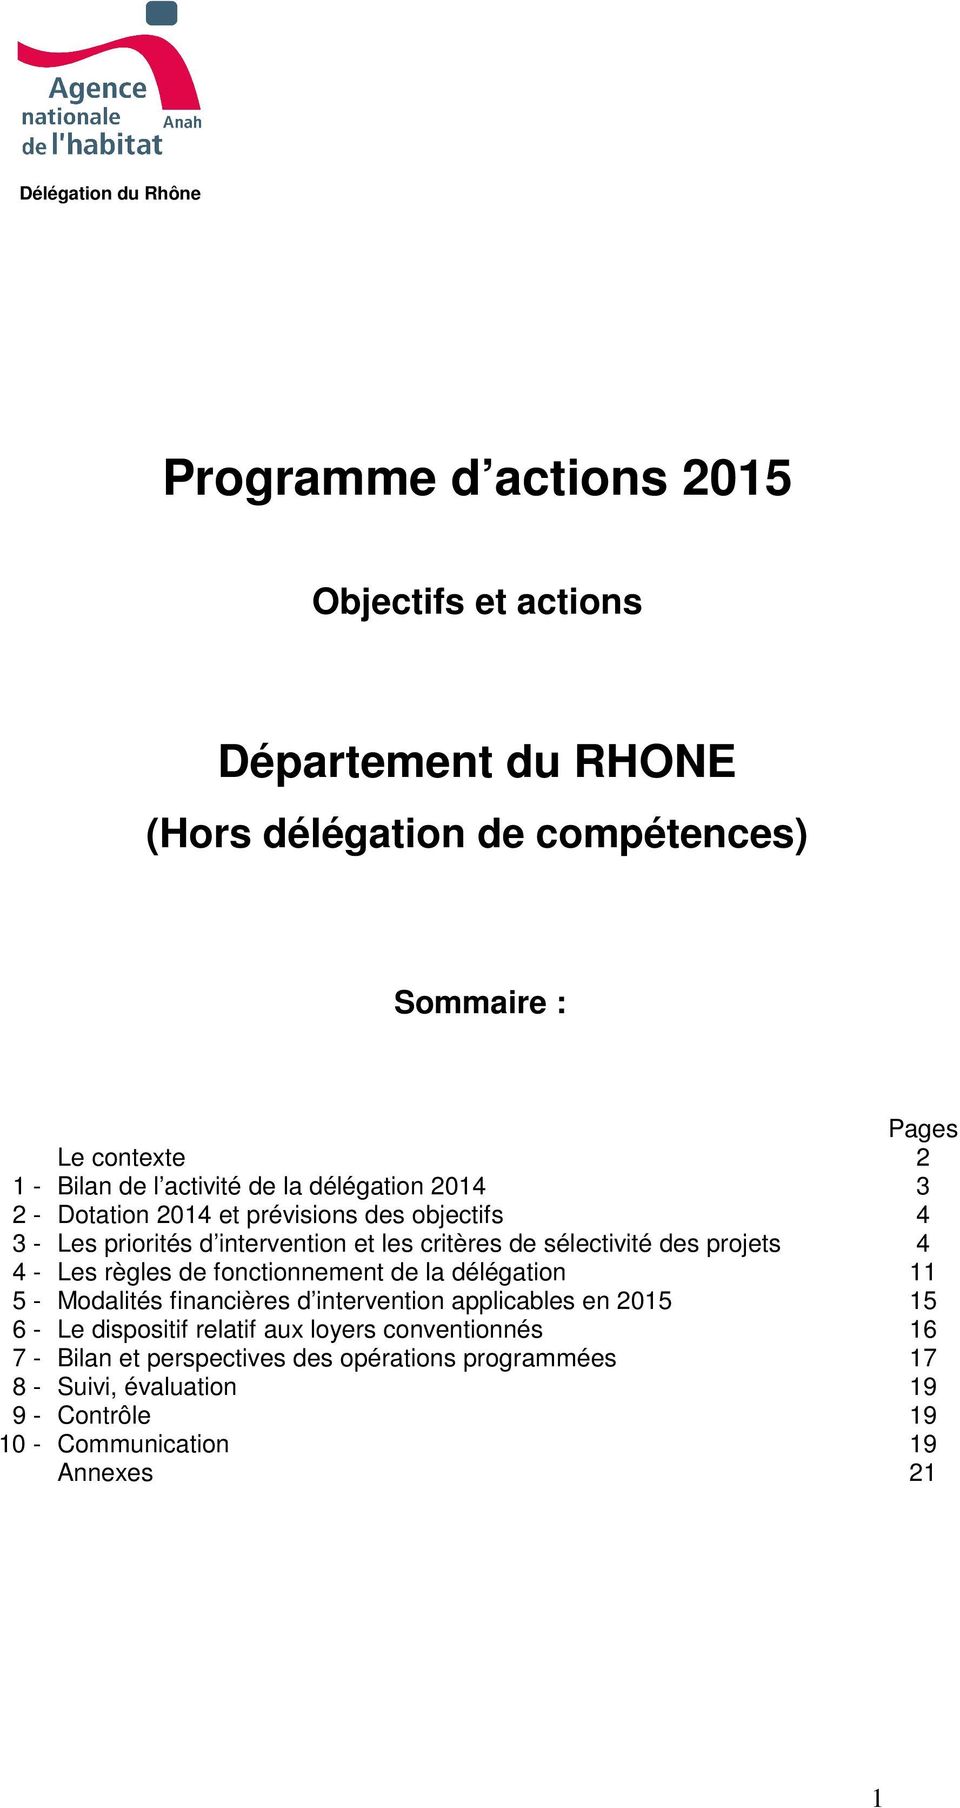 des projets 4 4 - Les règles de fonctionnement de la délégation 11 5 - Modalités financières d intervention applicables en 2015 15 6 - Le dispositif relatif